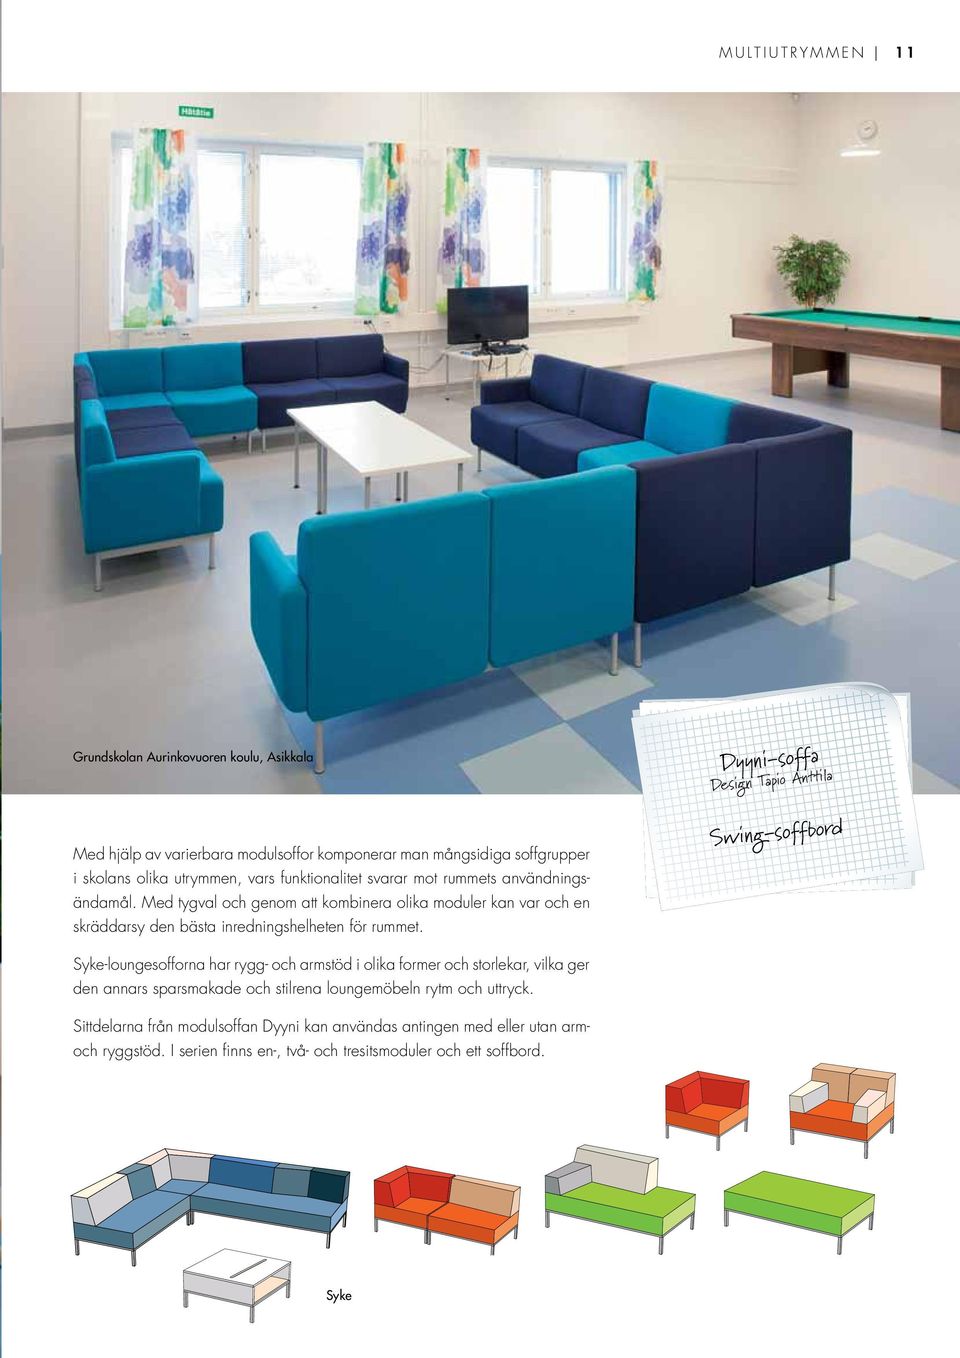 Dyyni-soffa Design Tapio Anttila Swing-soffbord Syke-loungesofforna har rygg- och armstöd i olika former och storlekar, vilka ger den annars sparsmakade och stilrena